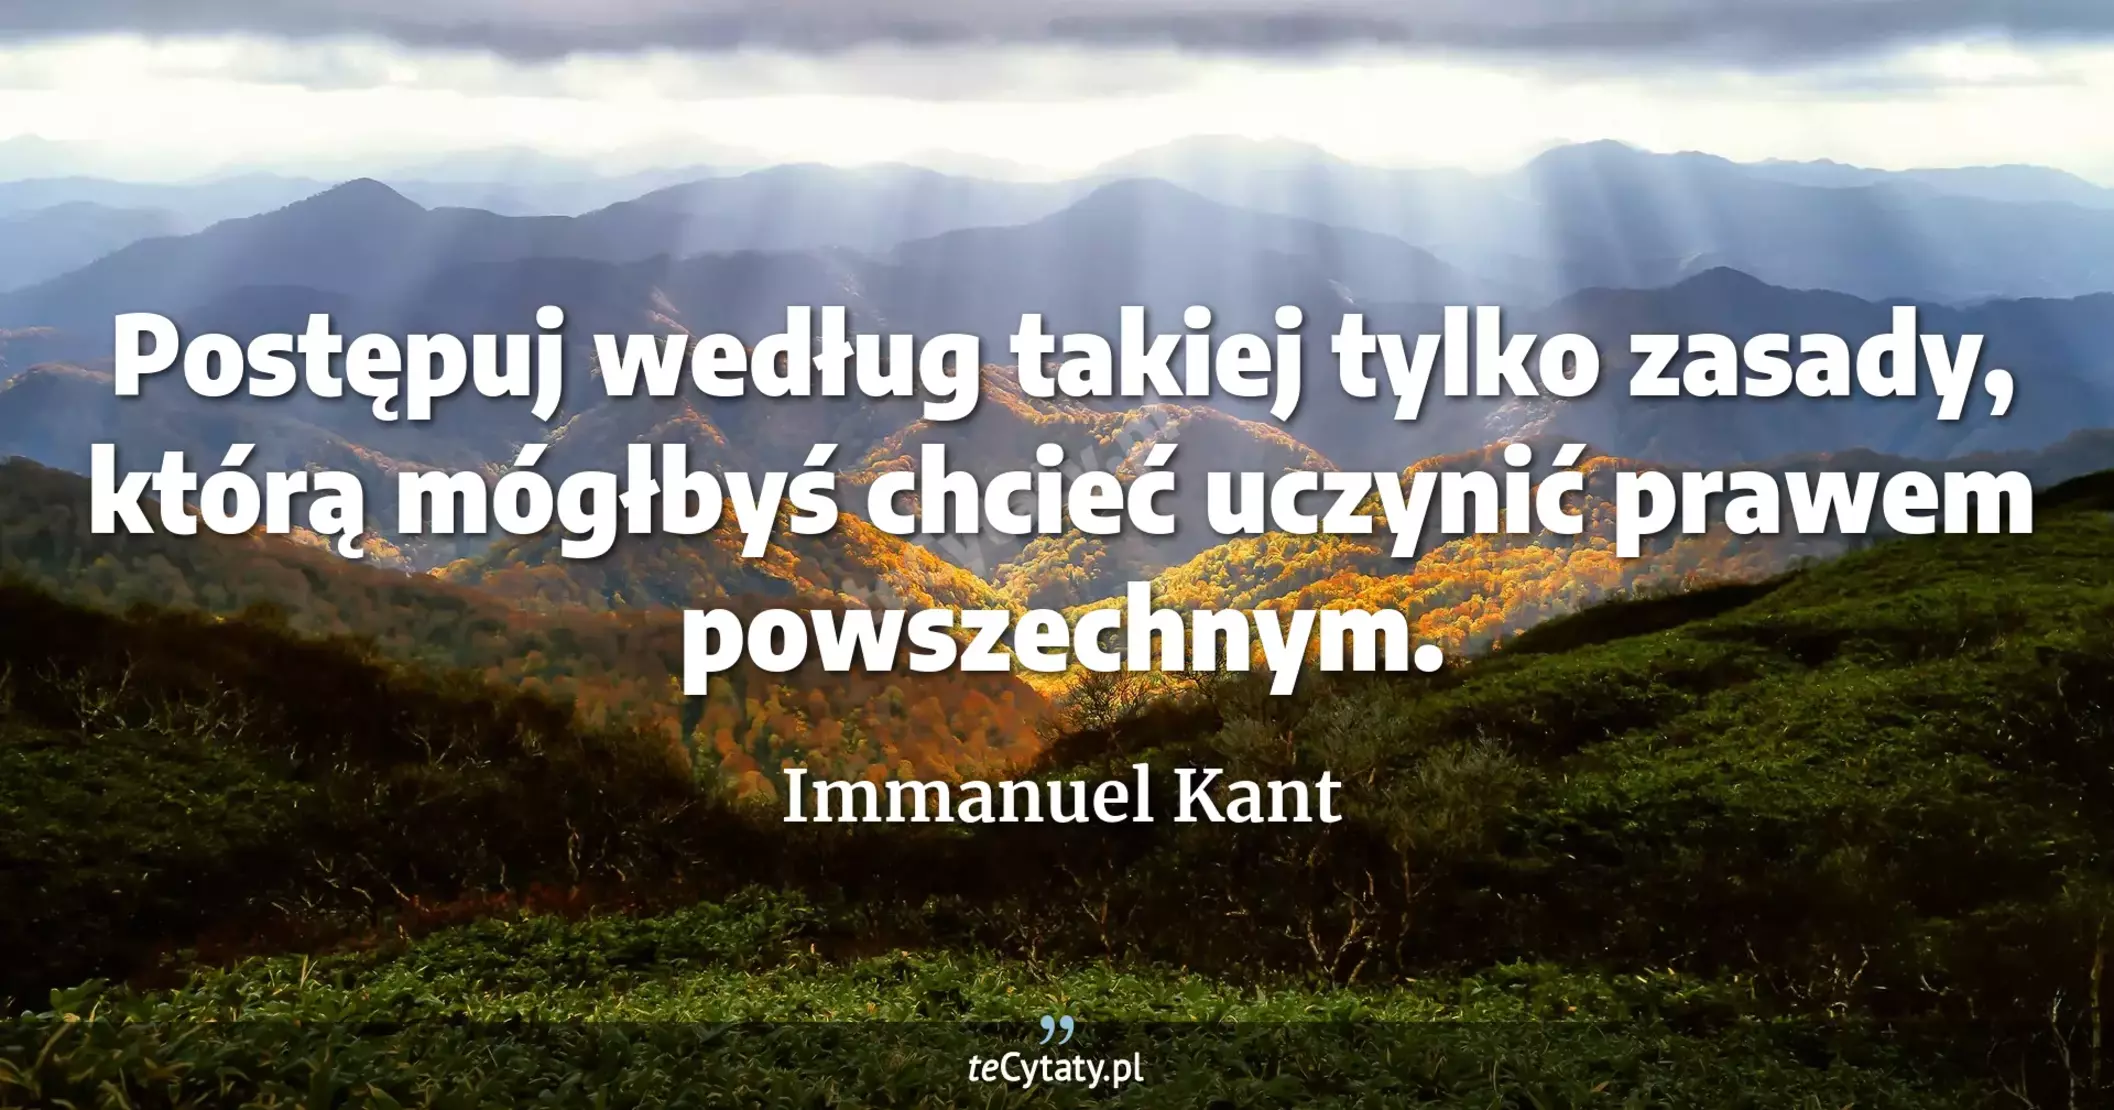 Postępuj według takiej tylko zasady, którą mógłbyś chcieć uczynić prawem powszechnym. - Immanuel Kant